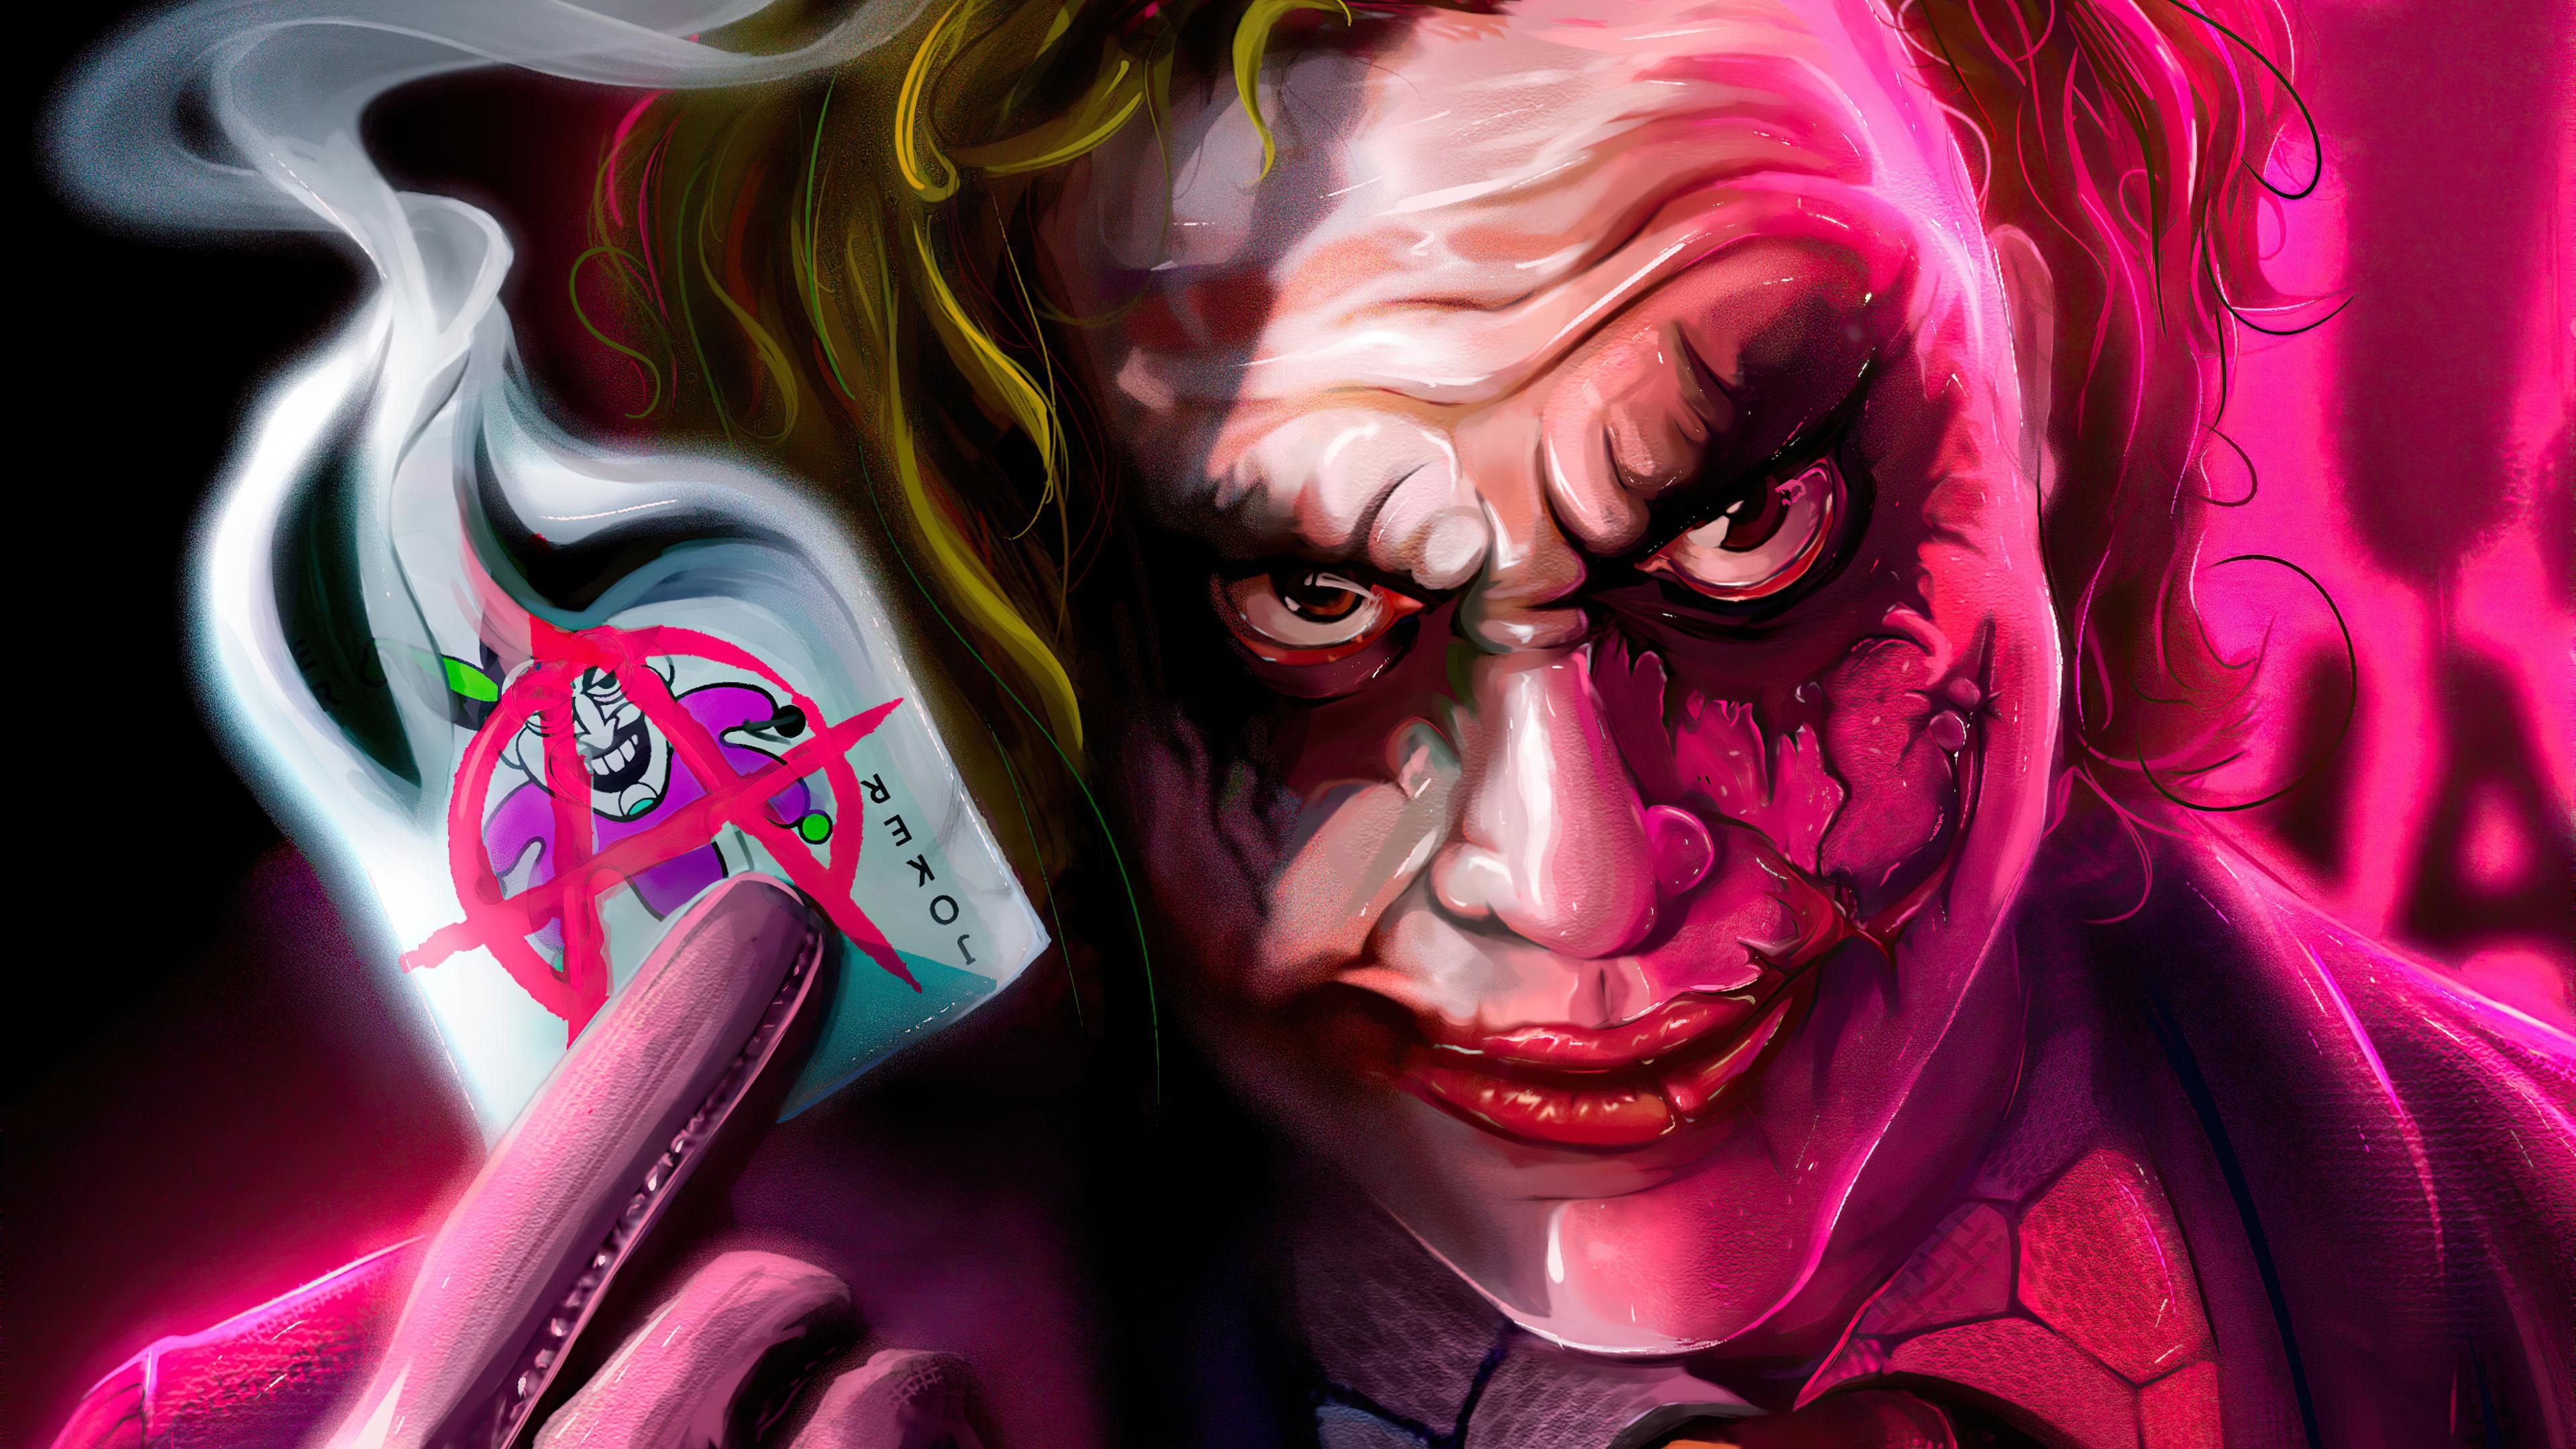 Joker Image HD PC